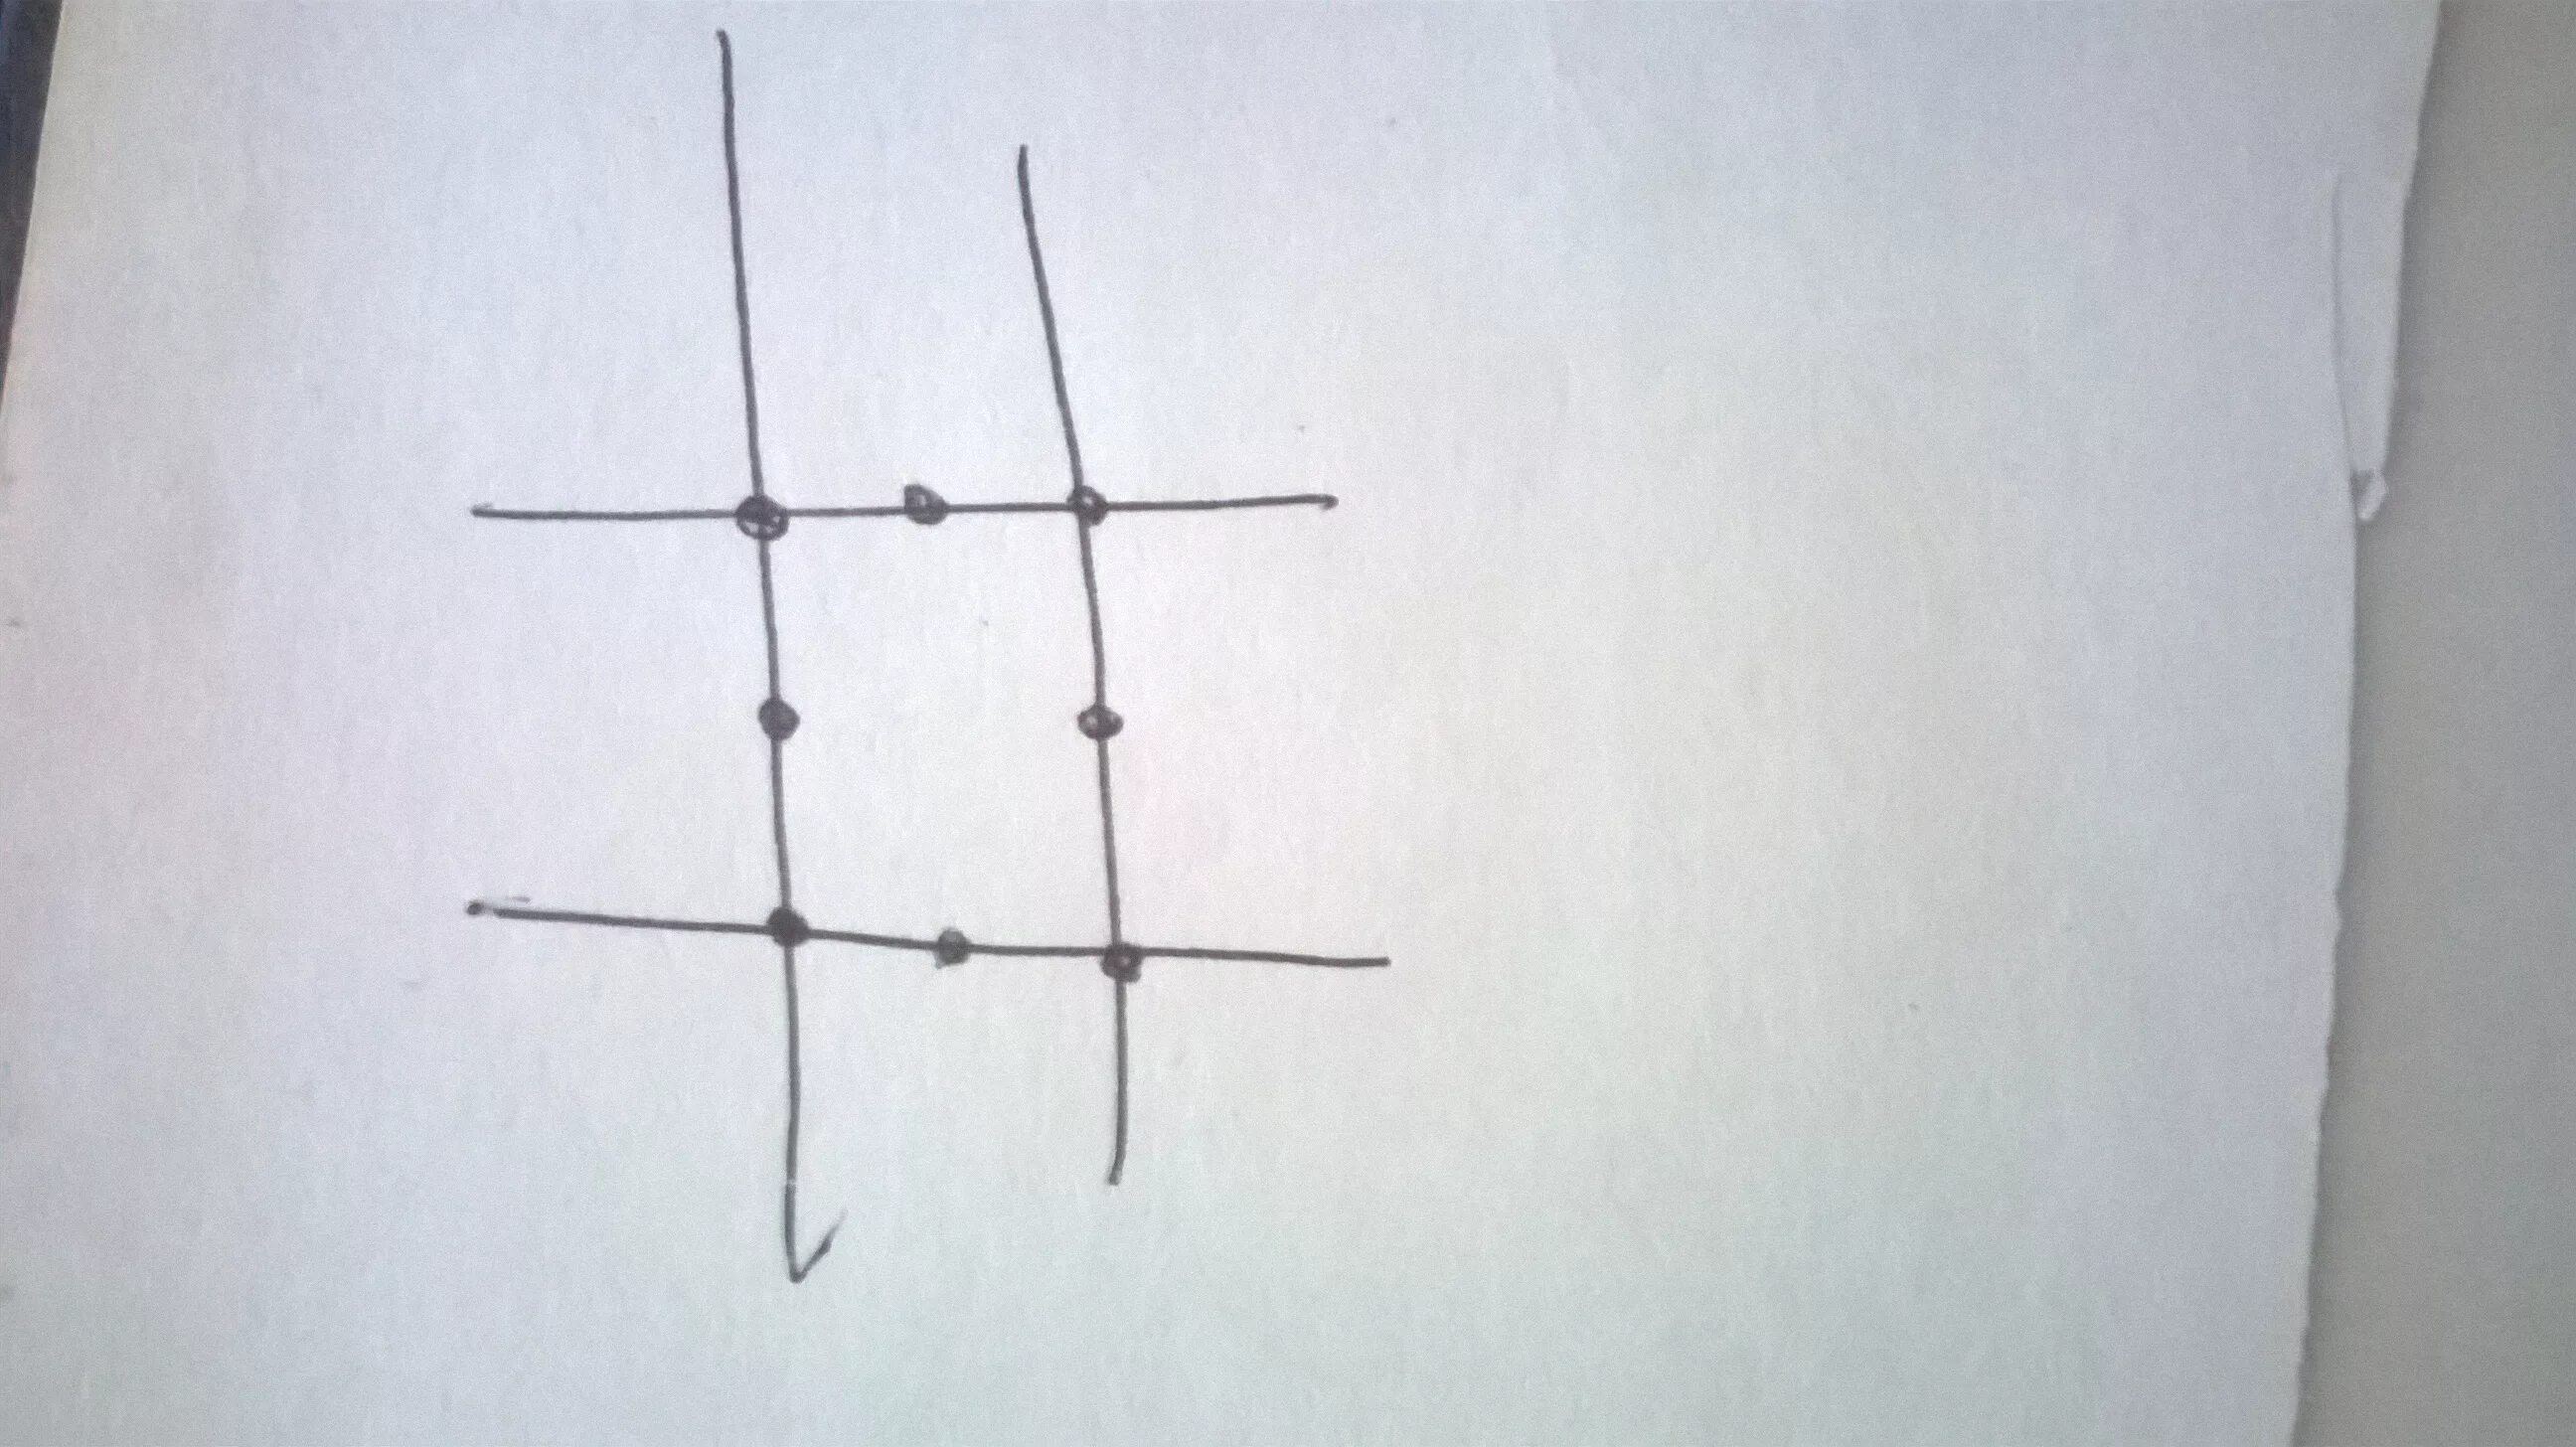 На каждой прямой поставь точку. 4 Прямые 8 точек. Расположи 6 точек на четырех прямых так чтобы на каждой было по 3 точки. 16 Точек на каждой прямой по 4. Ваня расставил 16 точек на восьми прямых.